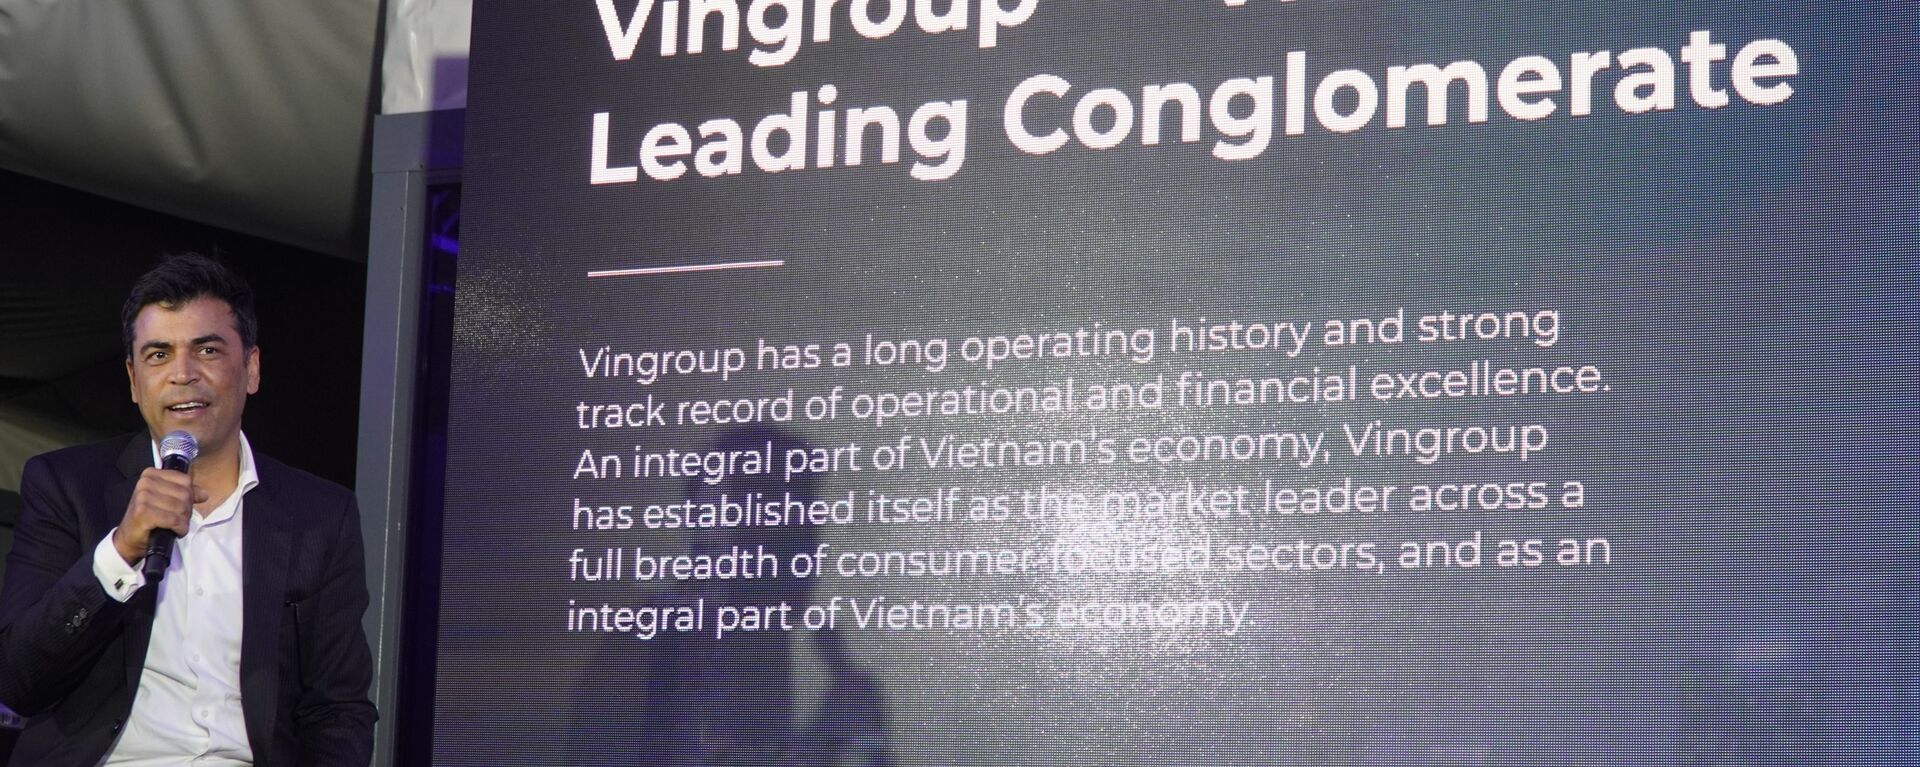 Phó TGĐ của VINGROUP Mantosh Malhotra giới thiệu về Tập đoàn VINGROUP tại Nga - Sputnik Việt Nam, 1920, 20.12.2020